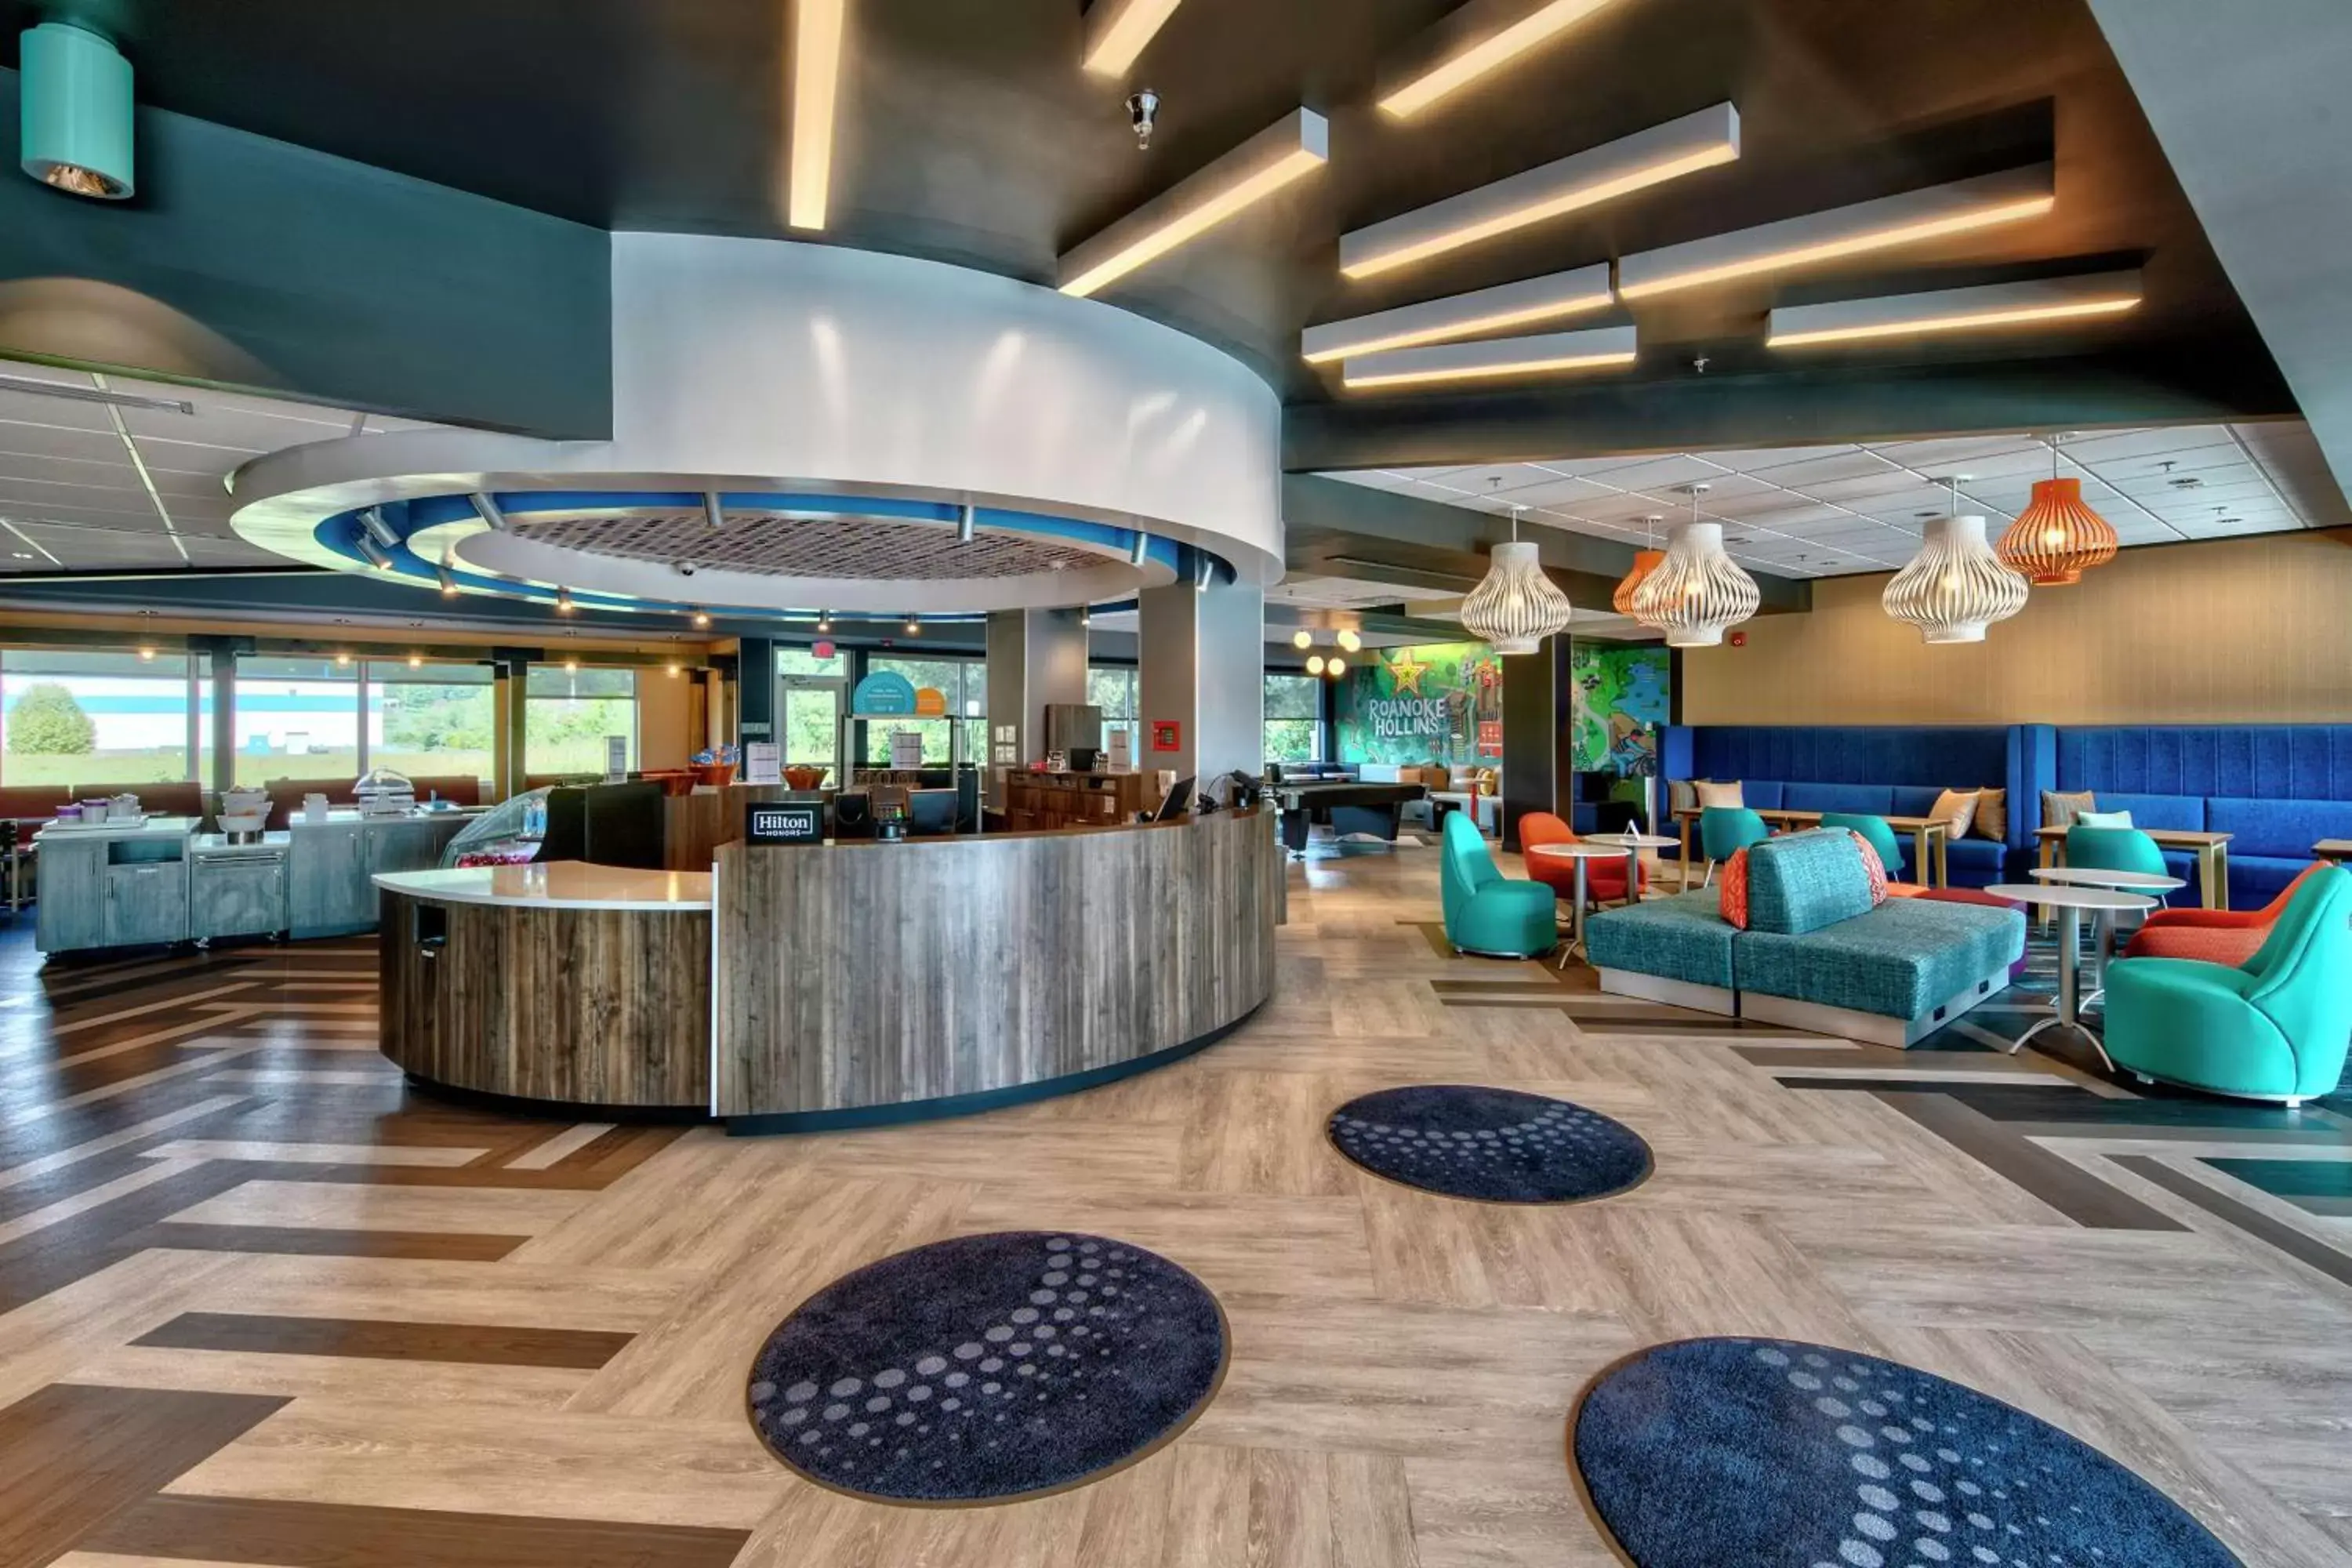 Lobby or reception in Tru By Hilton Roanoke Hollins